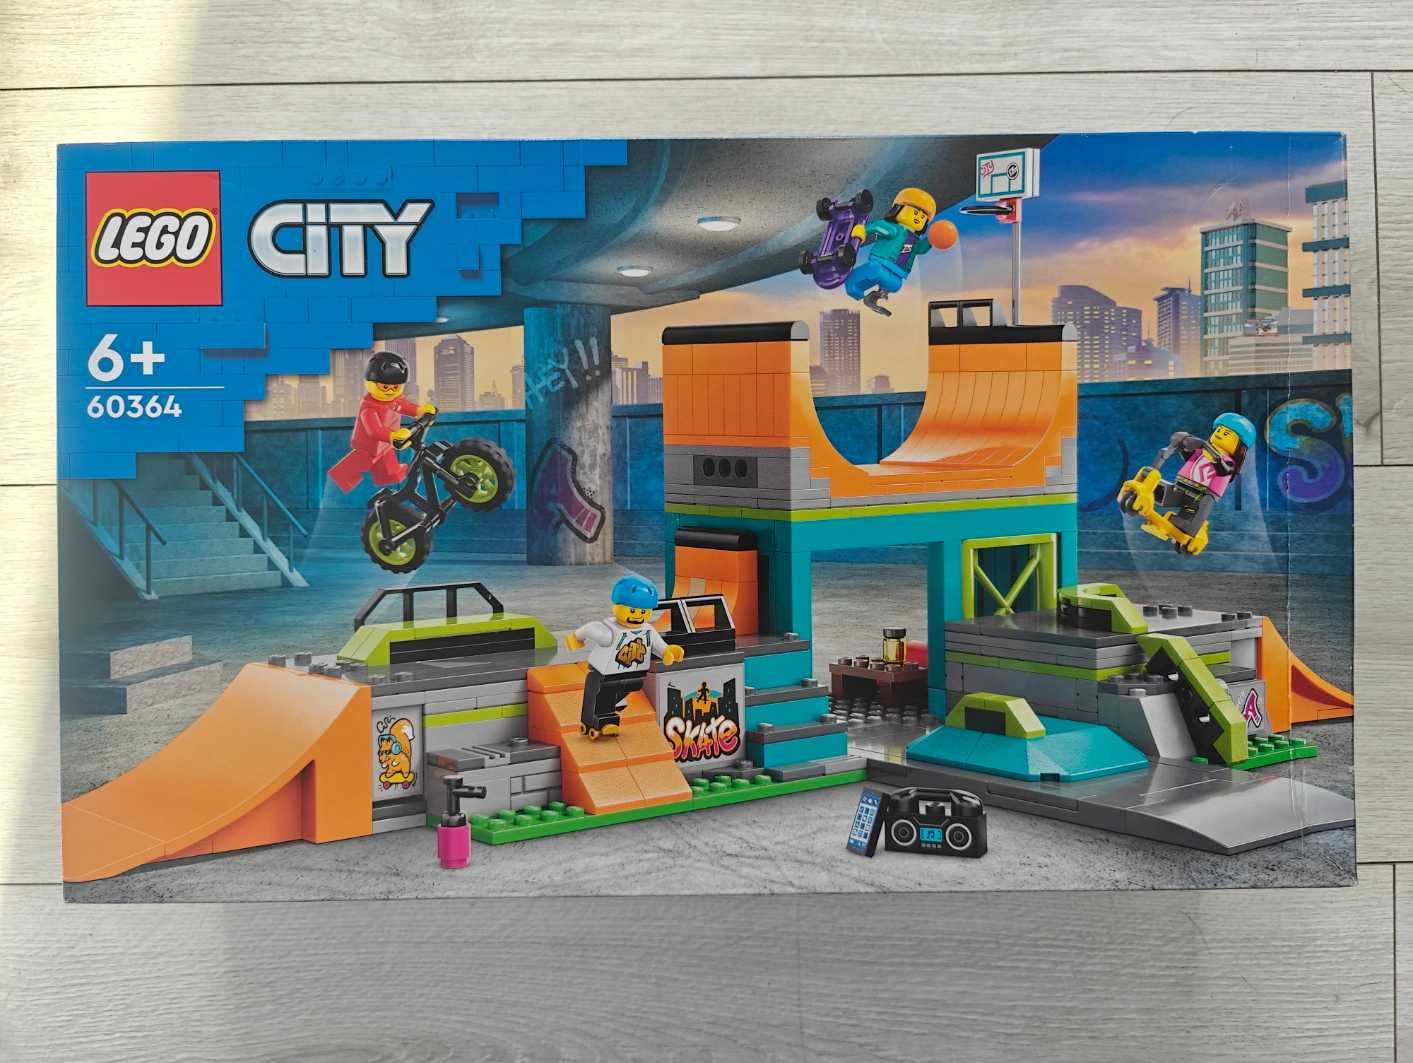 Fabrycznie NOWY zestaw LEGO City 60364 Skatepark uliczny, SZYBKO!